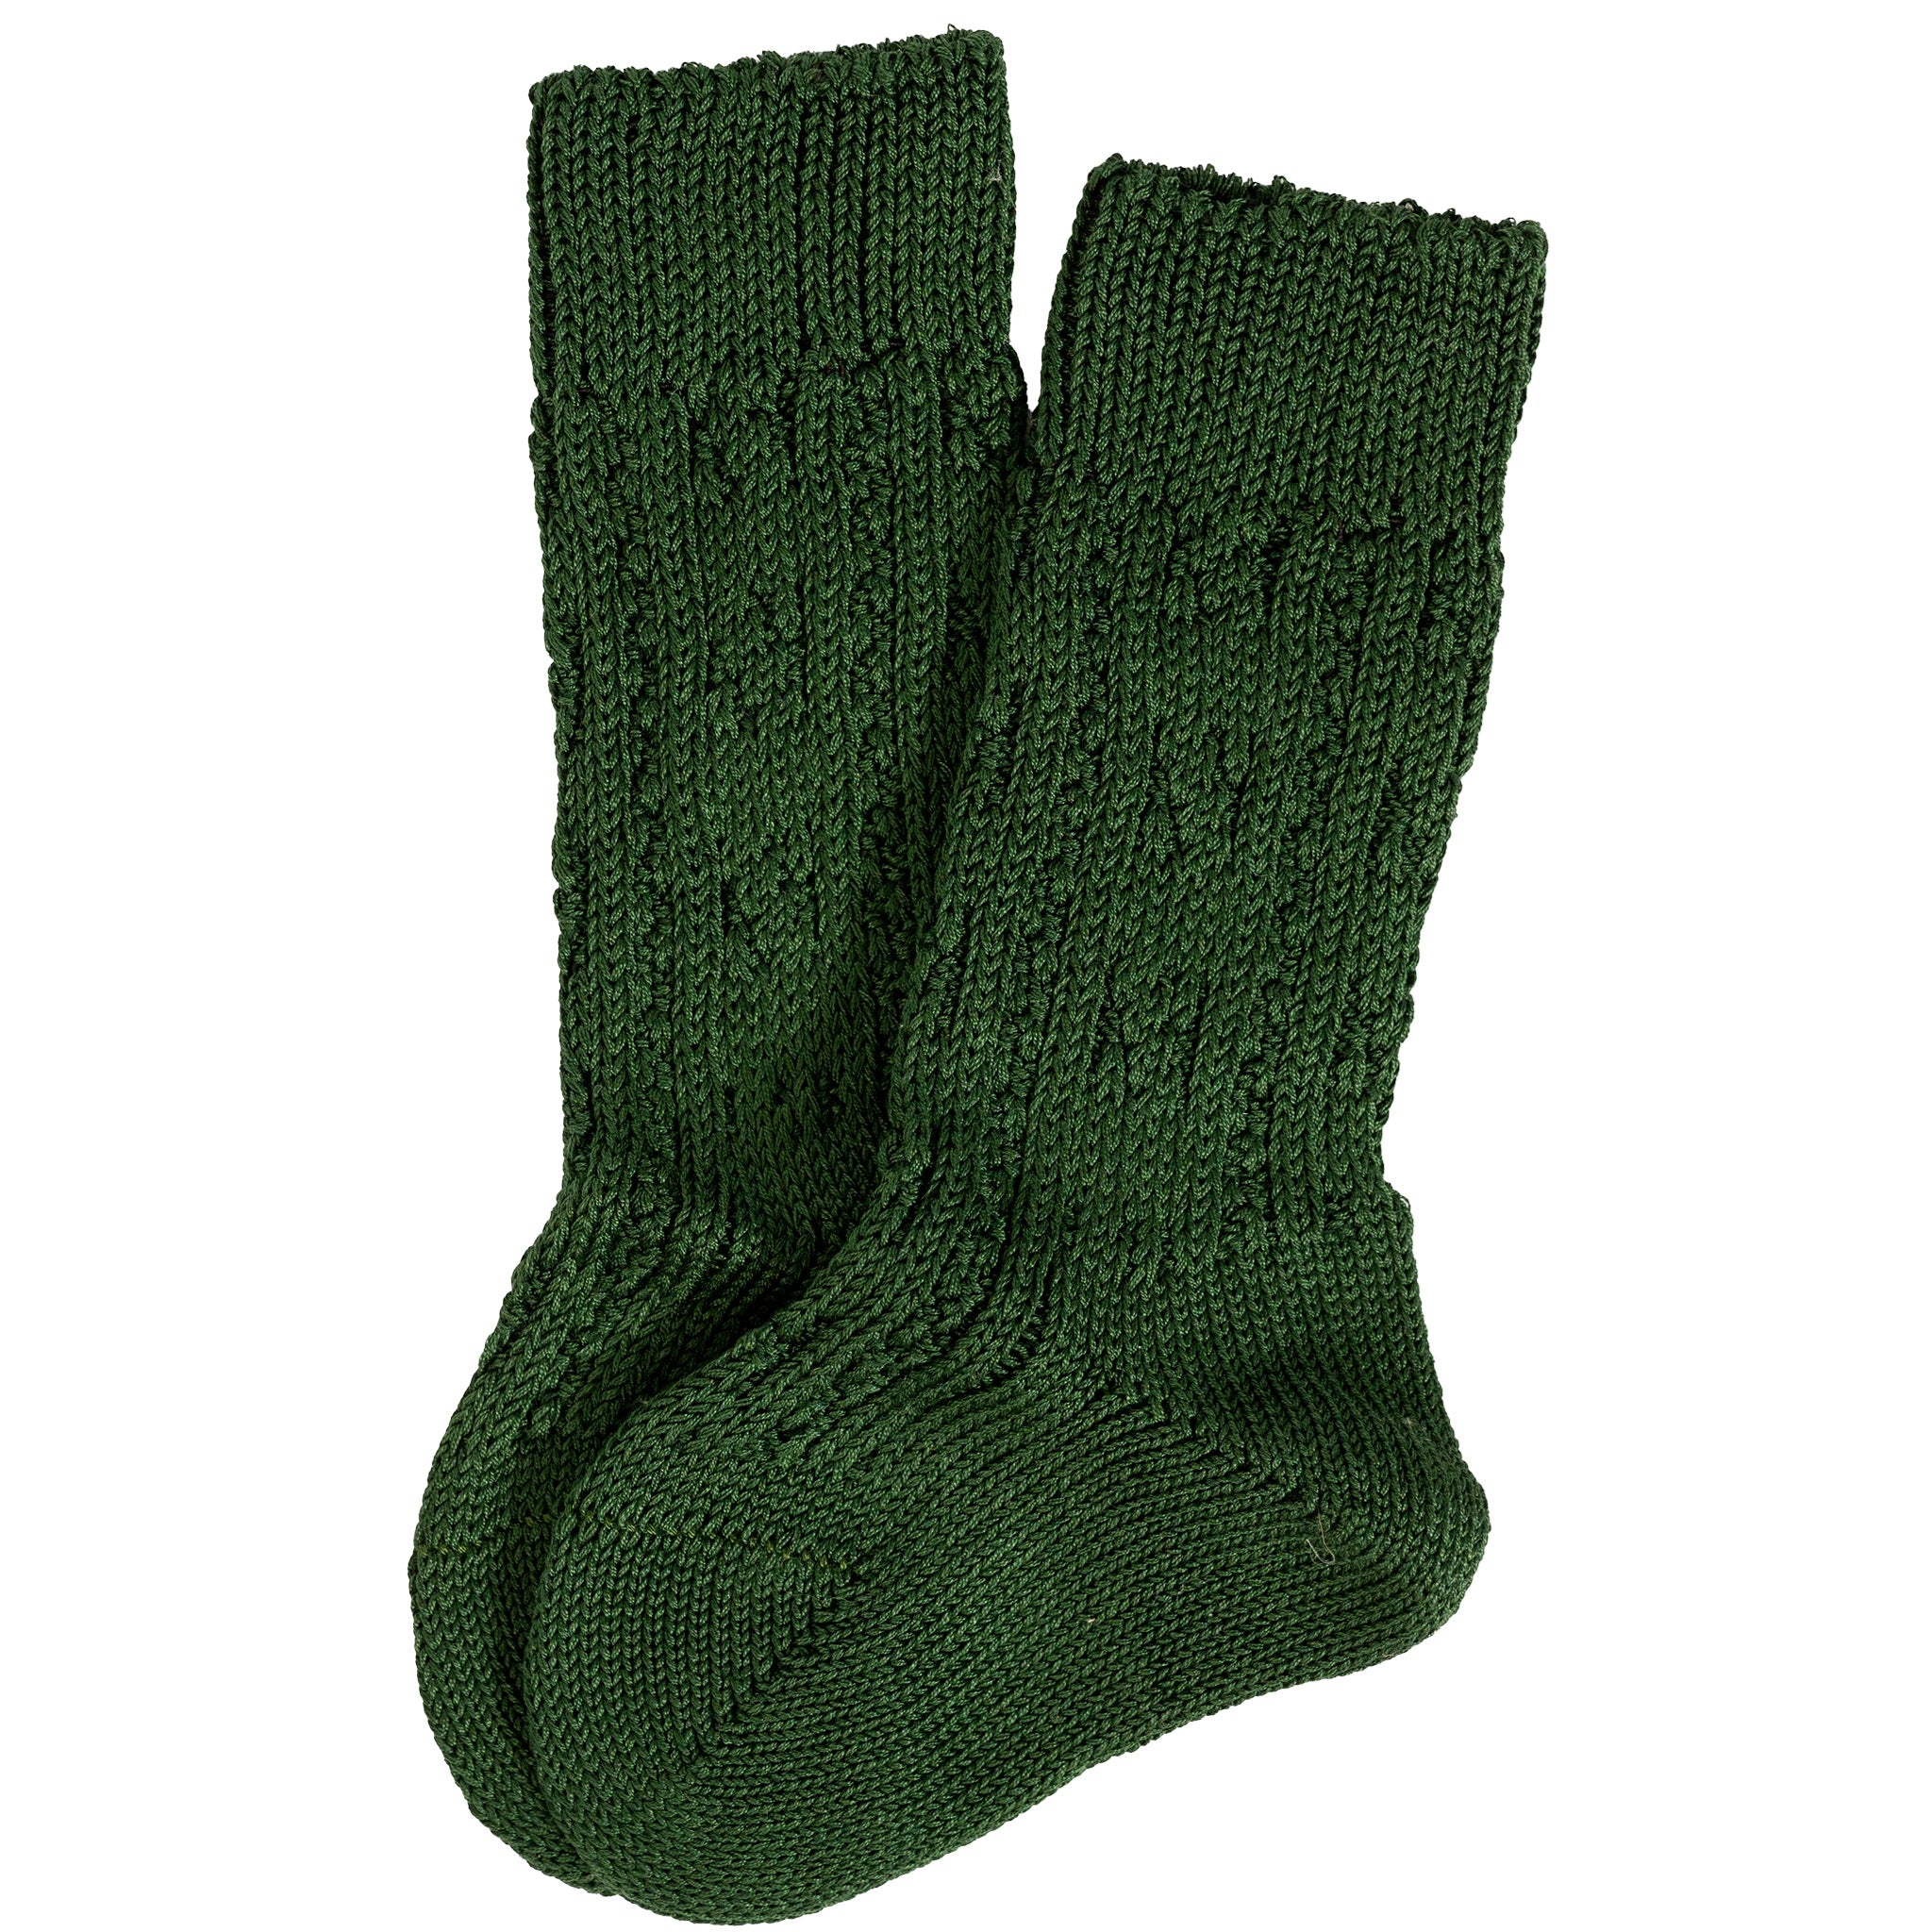 Kniestrumpf Socken Kinder Grün